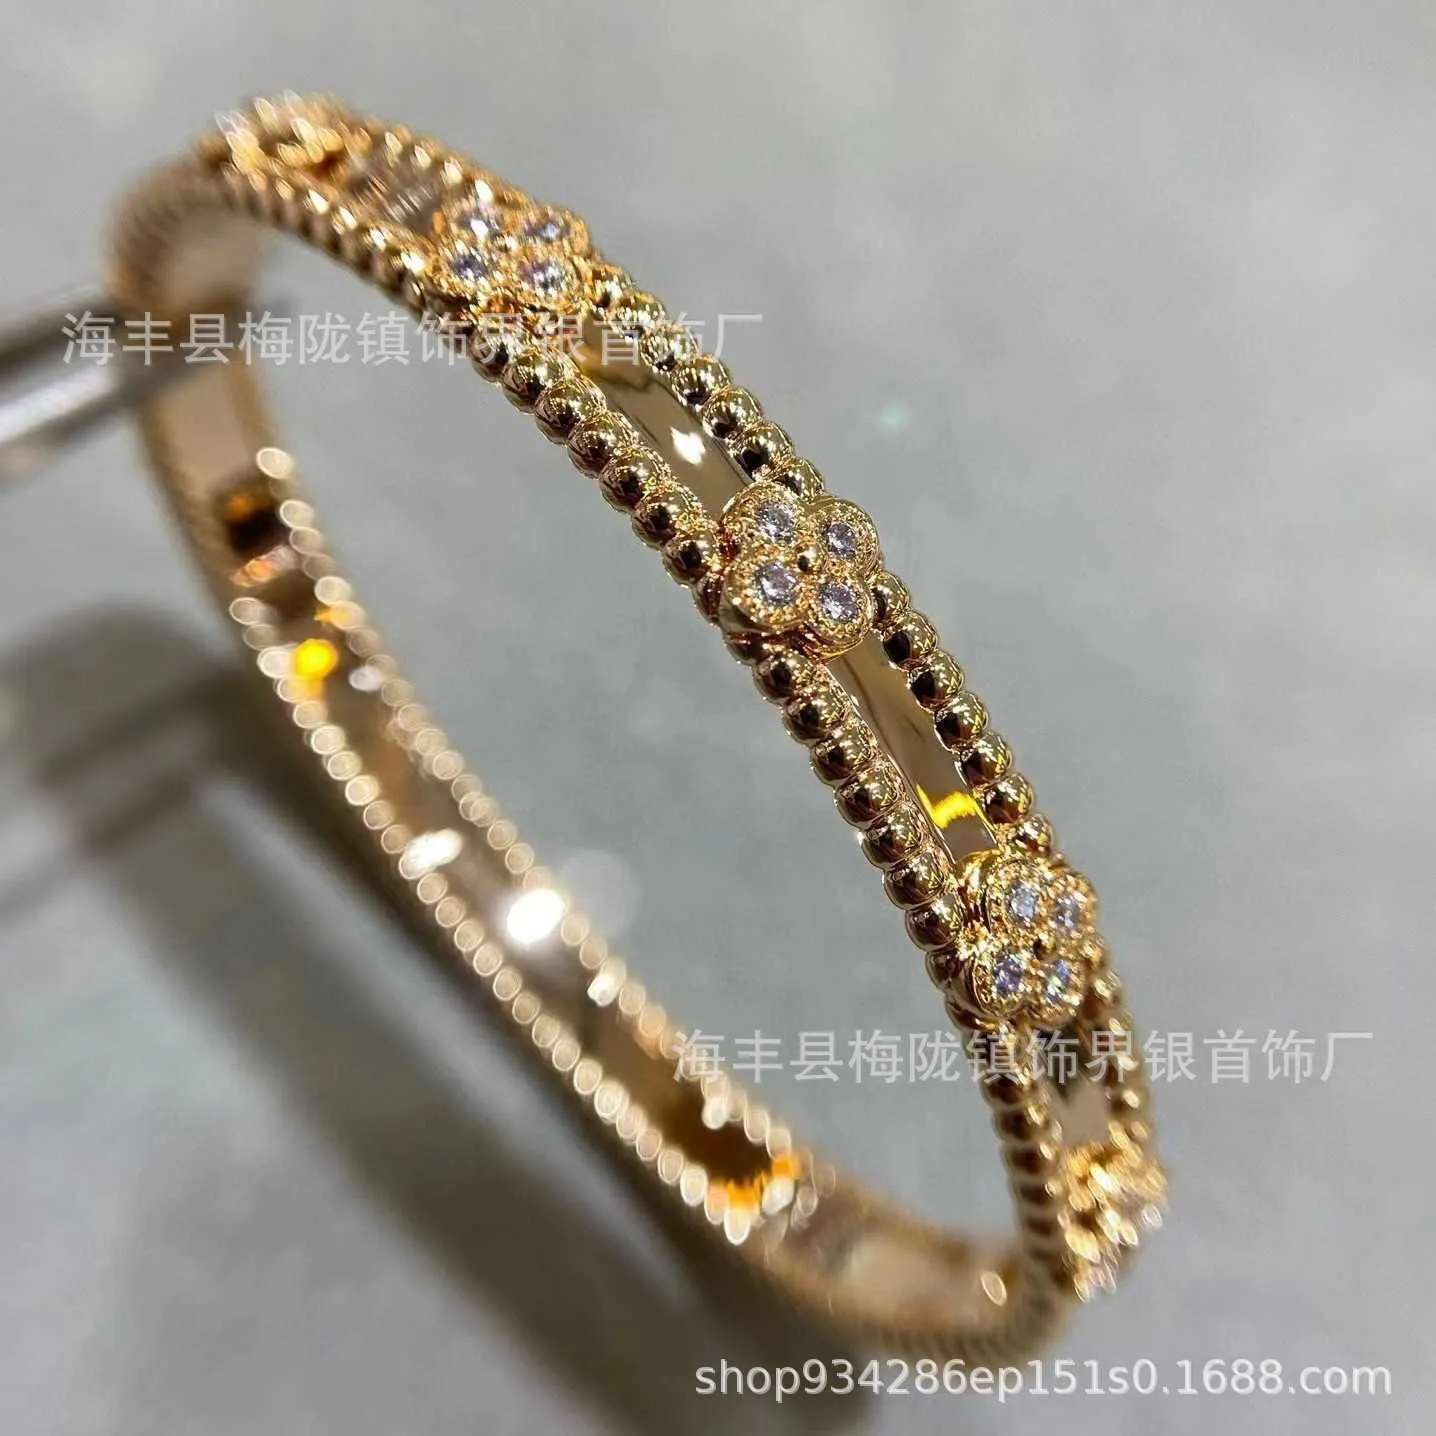 Роскошный дизайнерский браслет Van Clover из 18-каратного золота со сверкающими кристаллами и бриллиантами. Непревзойденный символ любви и защиты. Идеальный подарок для женщин и девочек 1419.